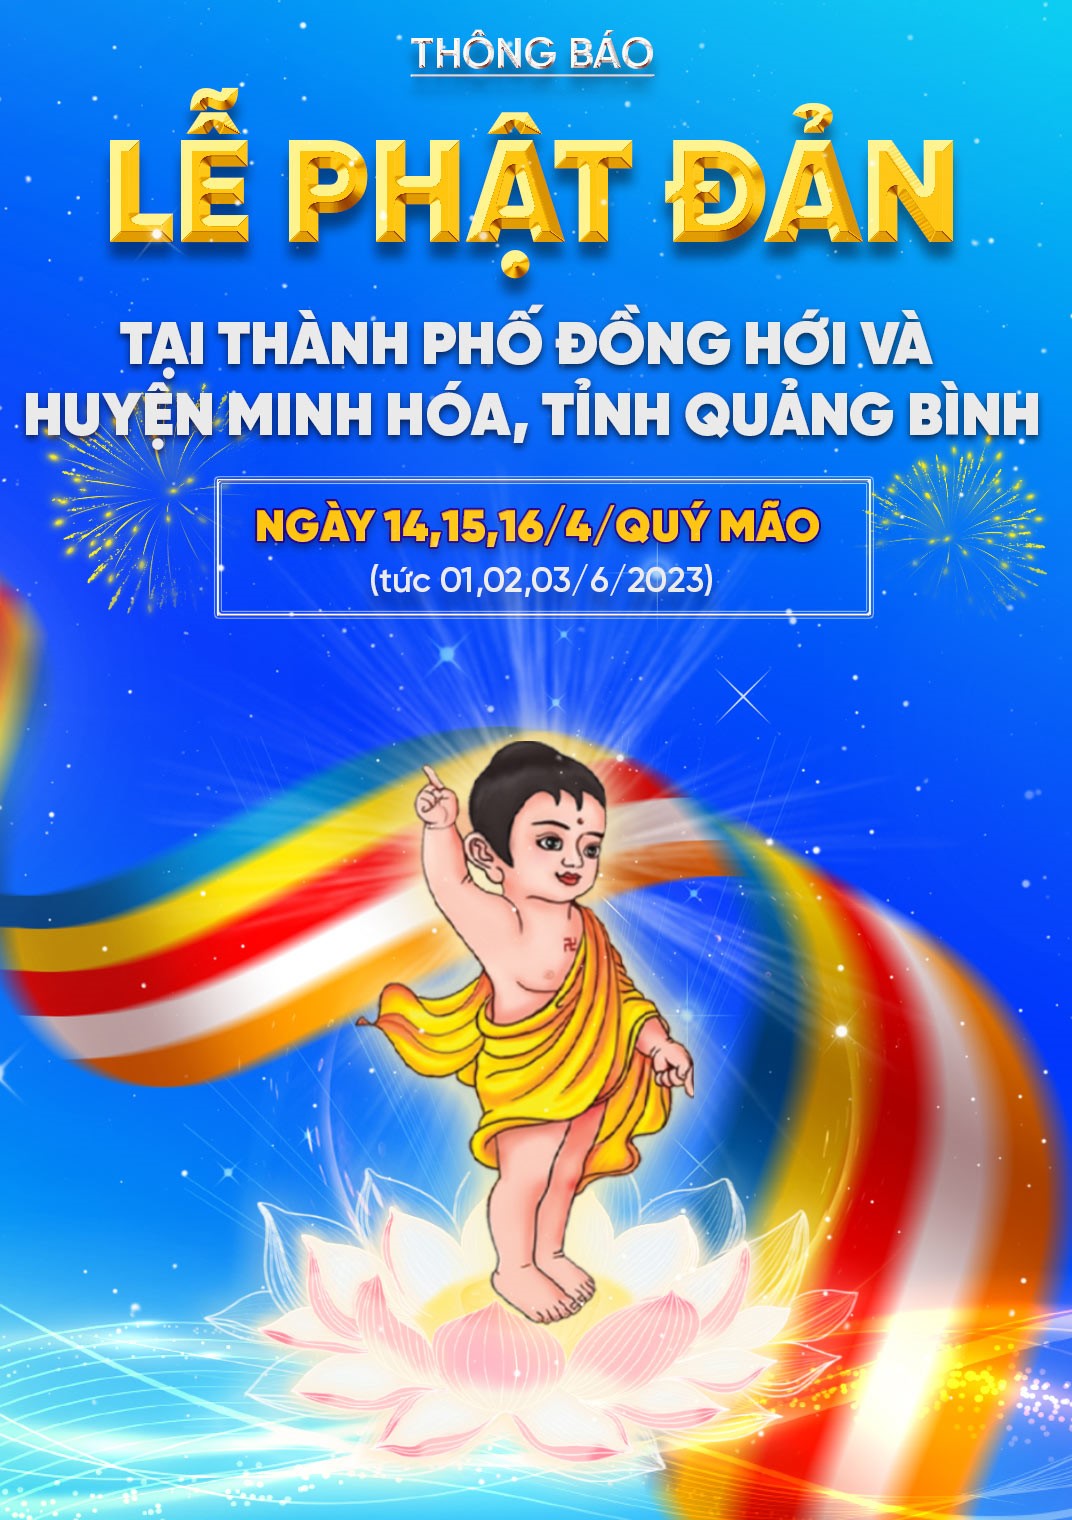 Quảng Bình: Đại lễ Phật Đản 2023 diễn ra vào ngày 14 - 16/4/Quý Mão (tức 1 - 3/6/2023) - 1